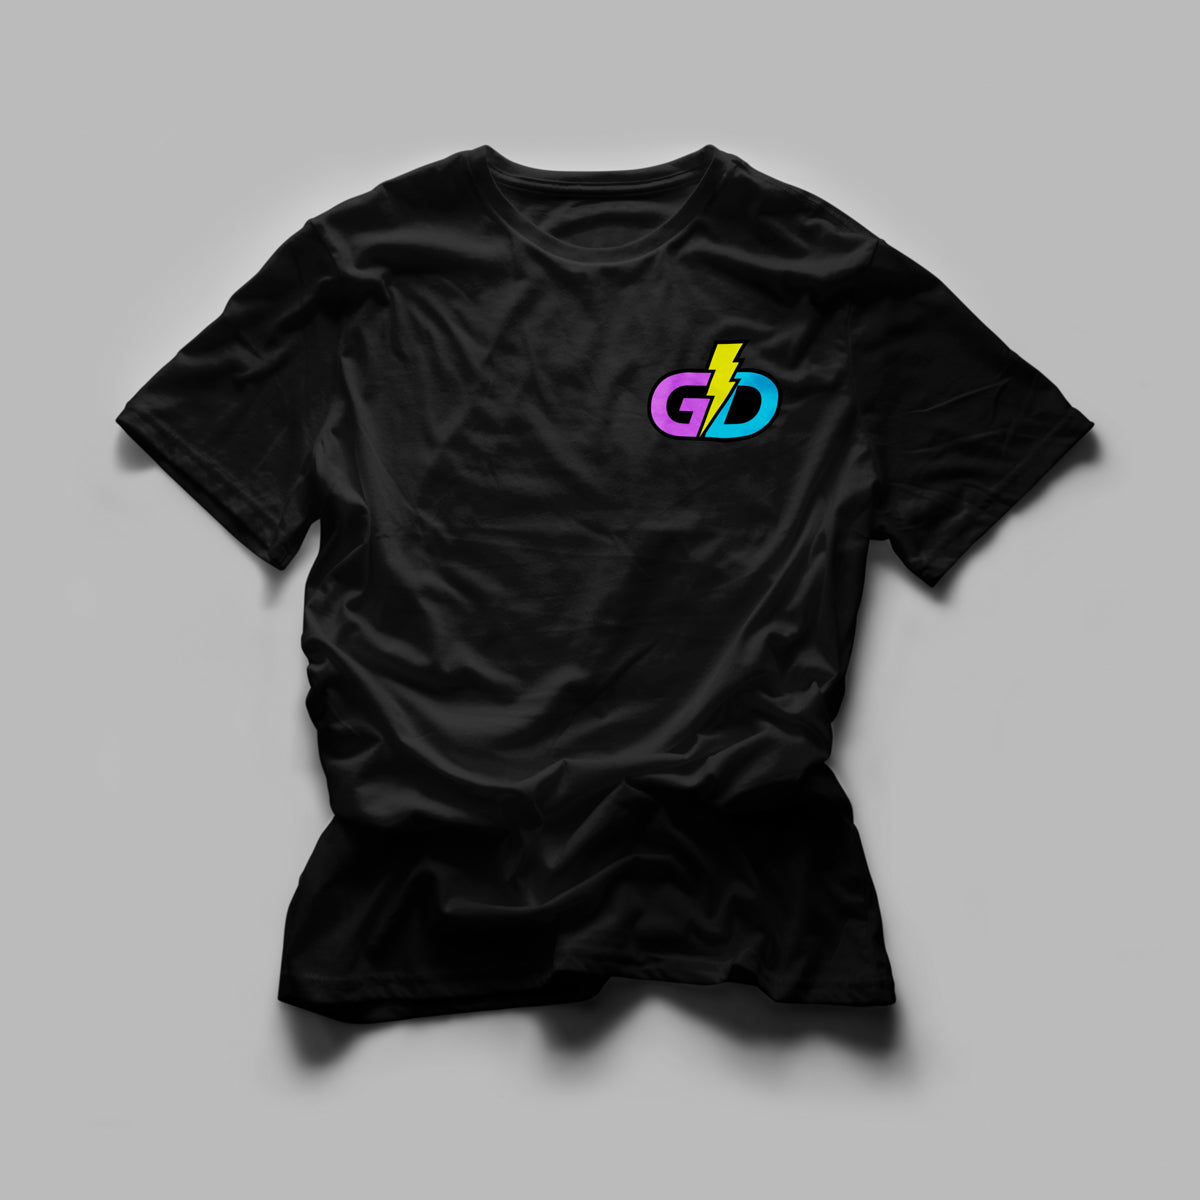 Gawddamm_it - GD Tshirt Embroidered